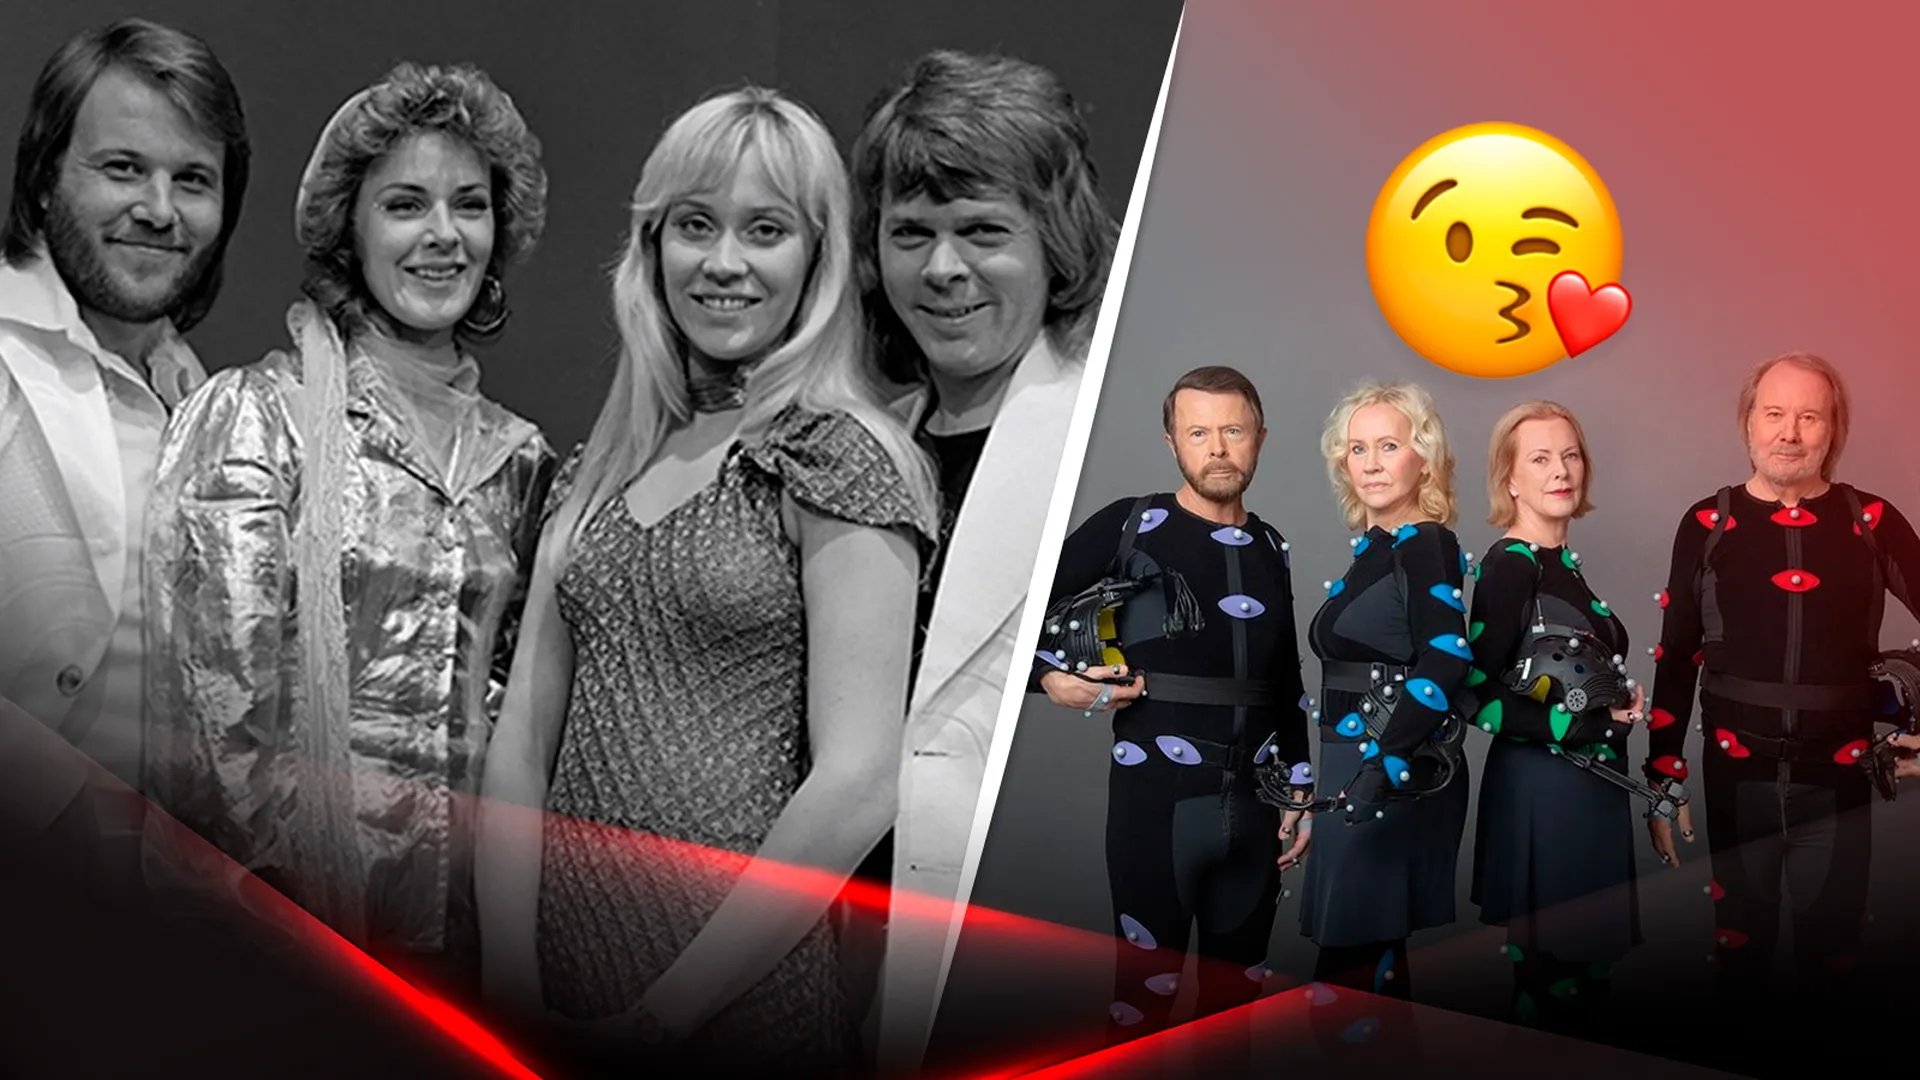 Группа ABBA в молодости и в наши дни